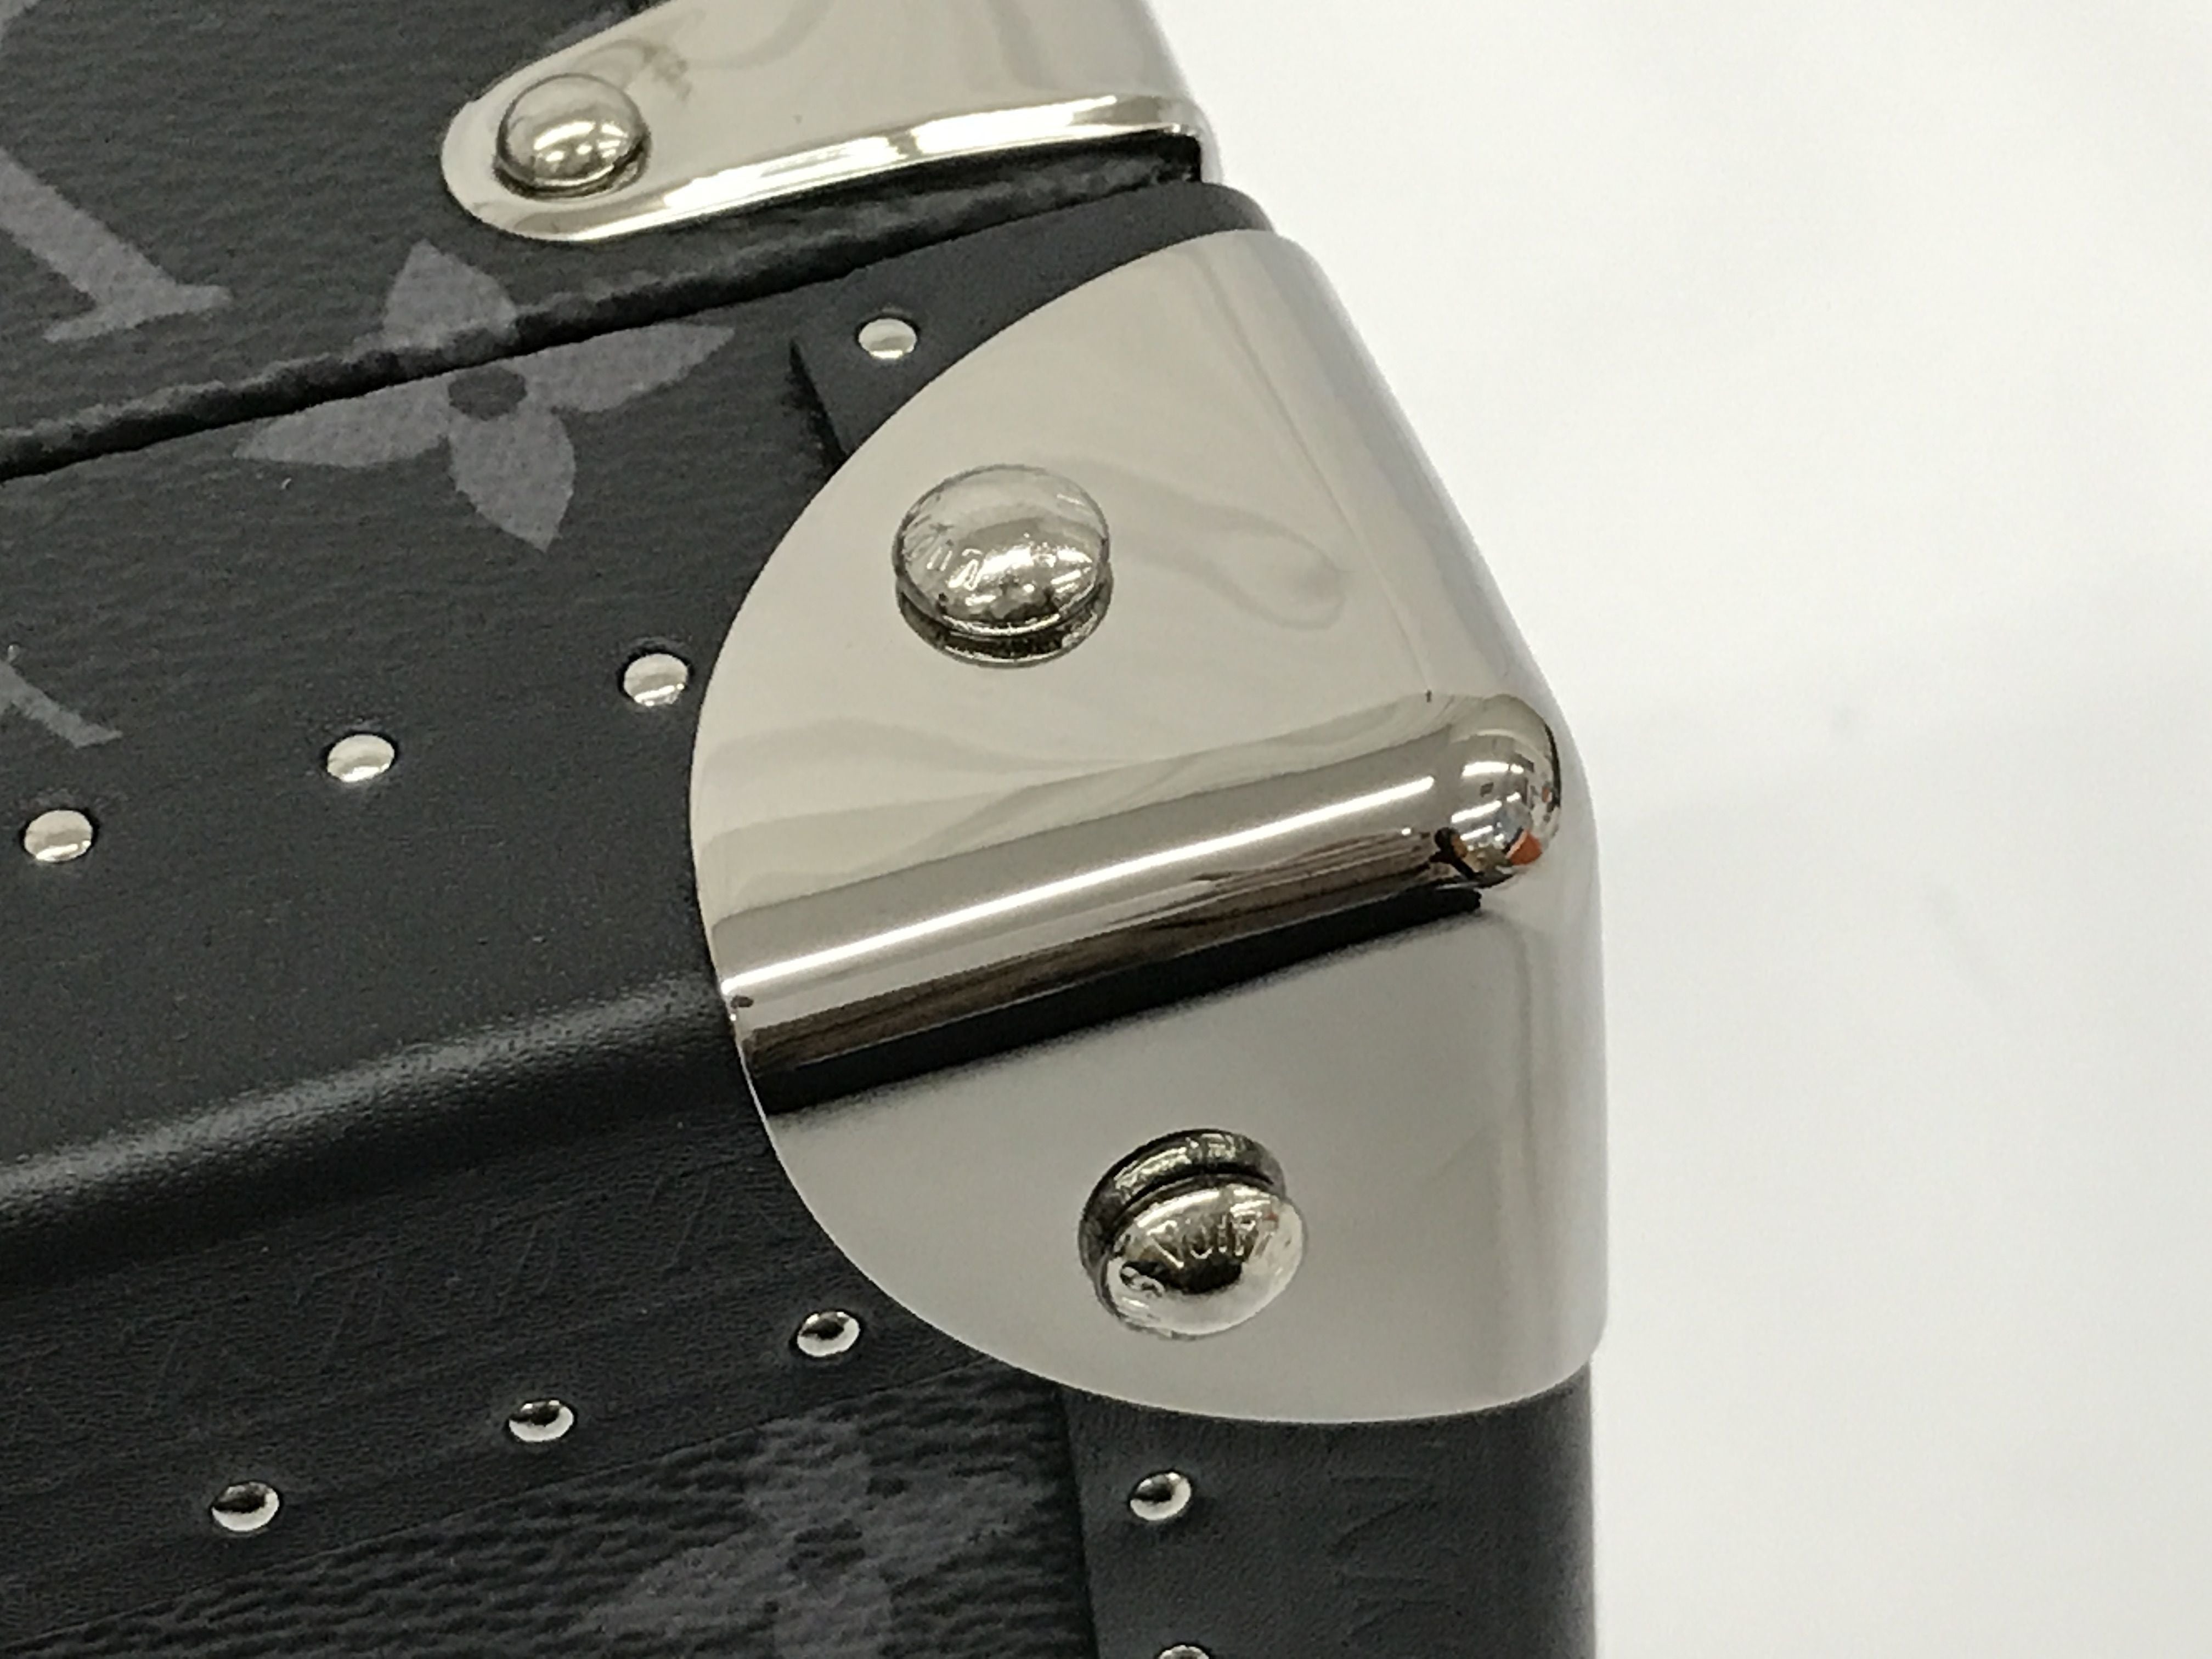 LOUIS VUITTON Monogram Coffret 8 Montor Trunk Watch case M20016 LV Auth  29887A